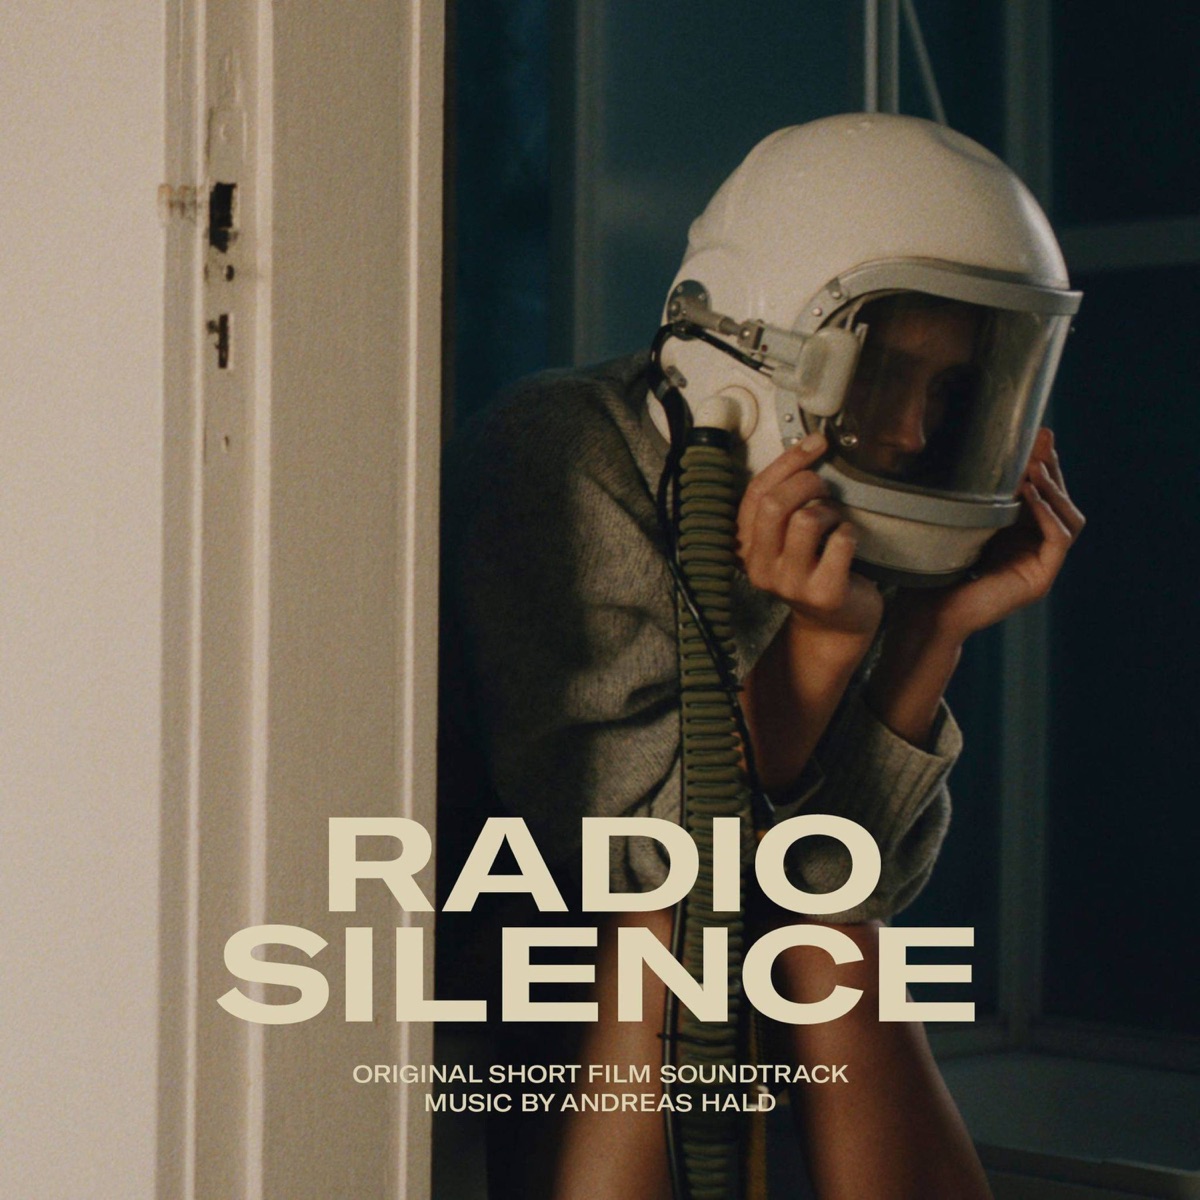 Radio silence movie